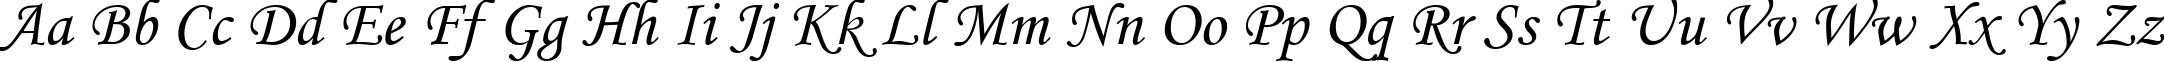 Пример написания английского алфавита шрифтом Corsiva Cyr